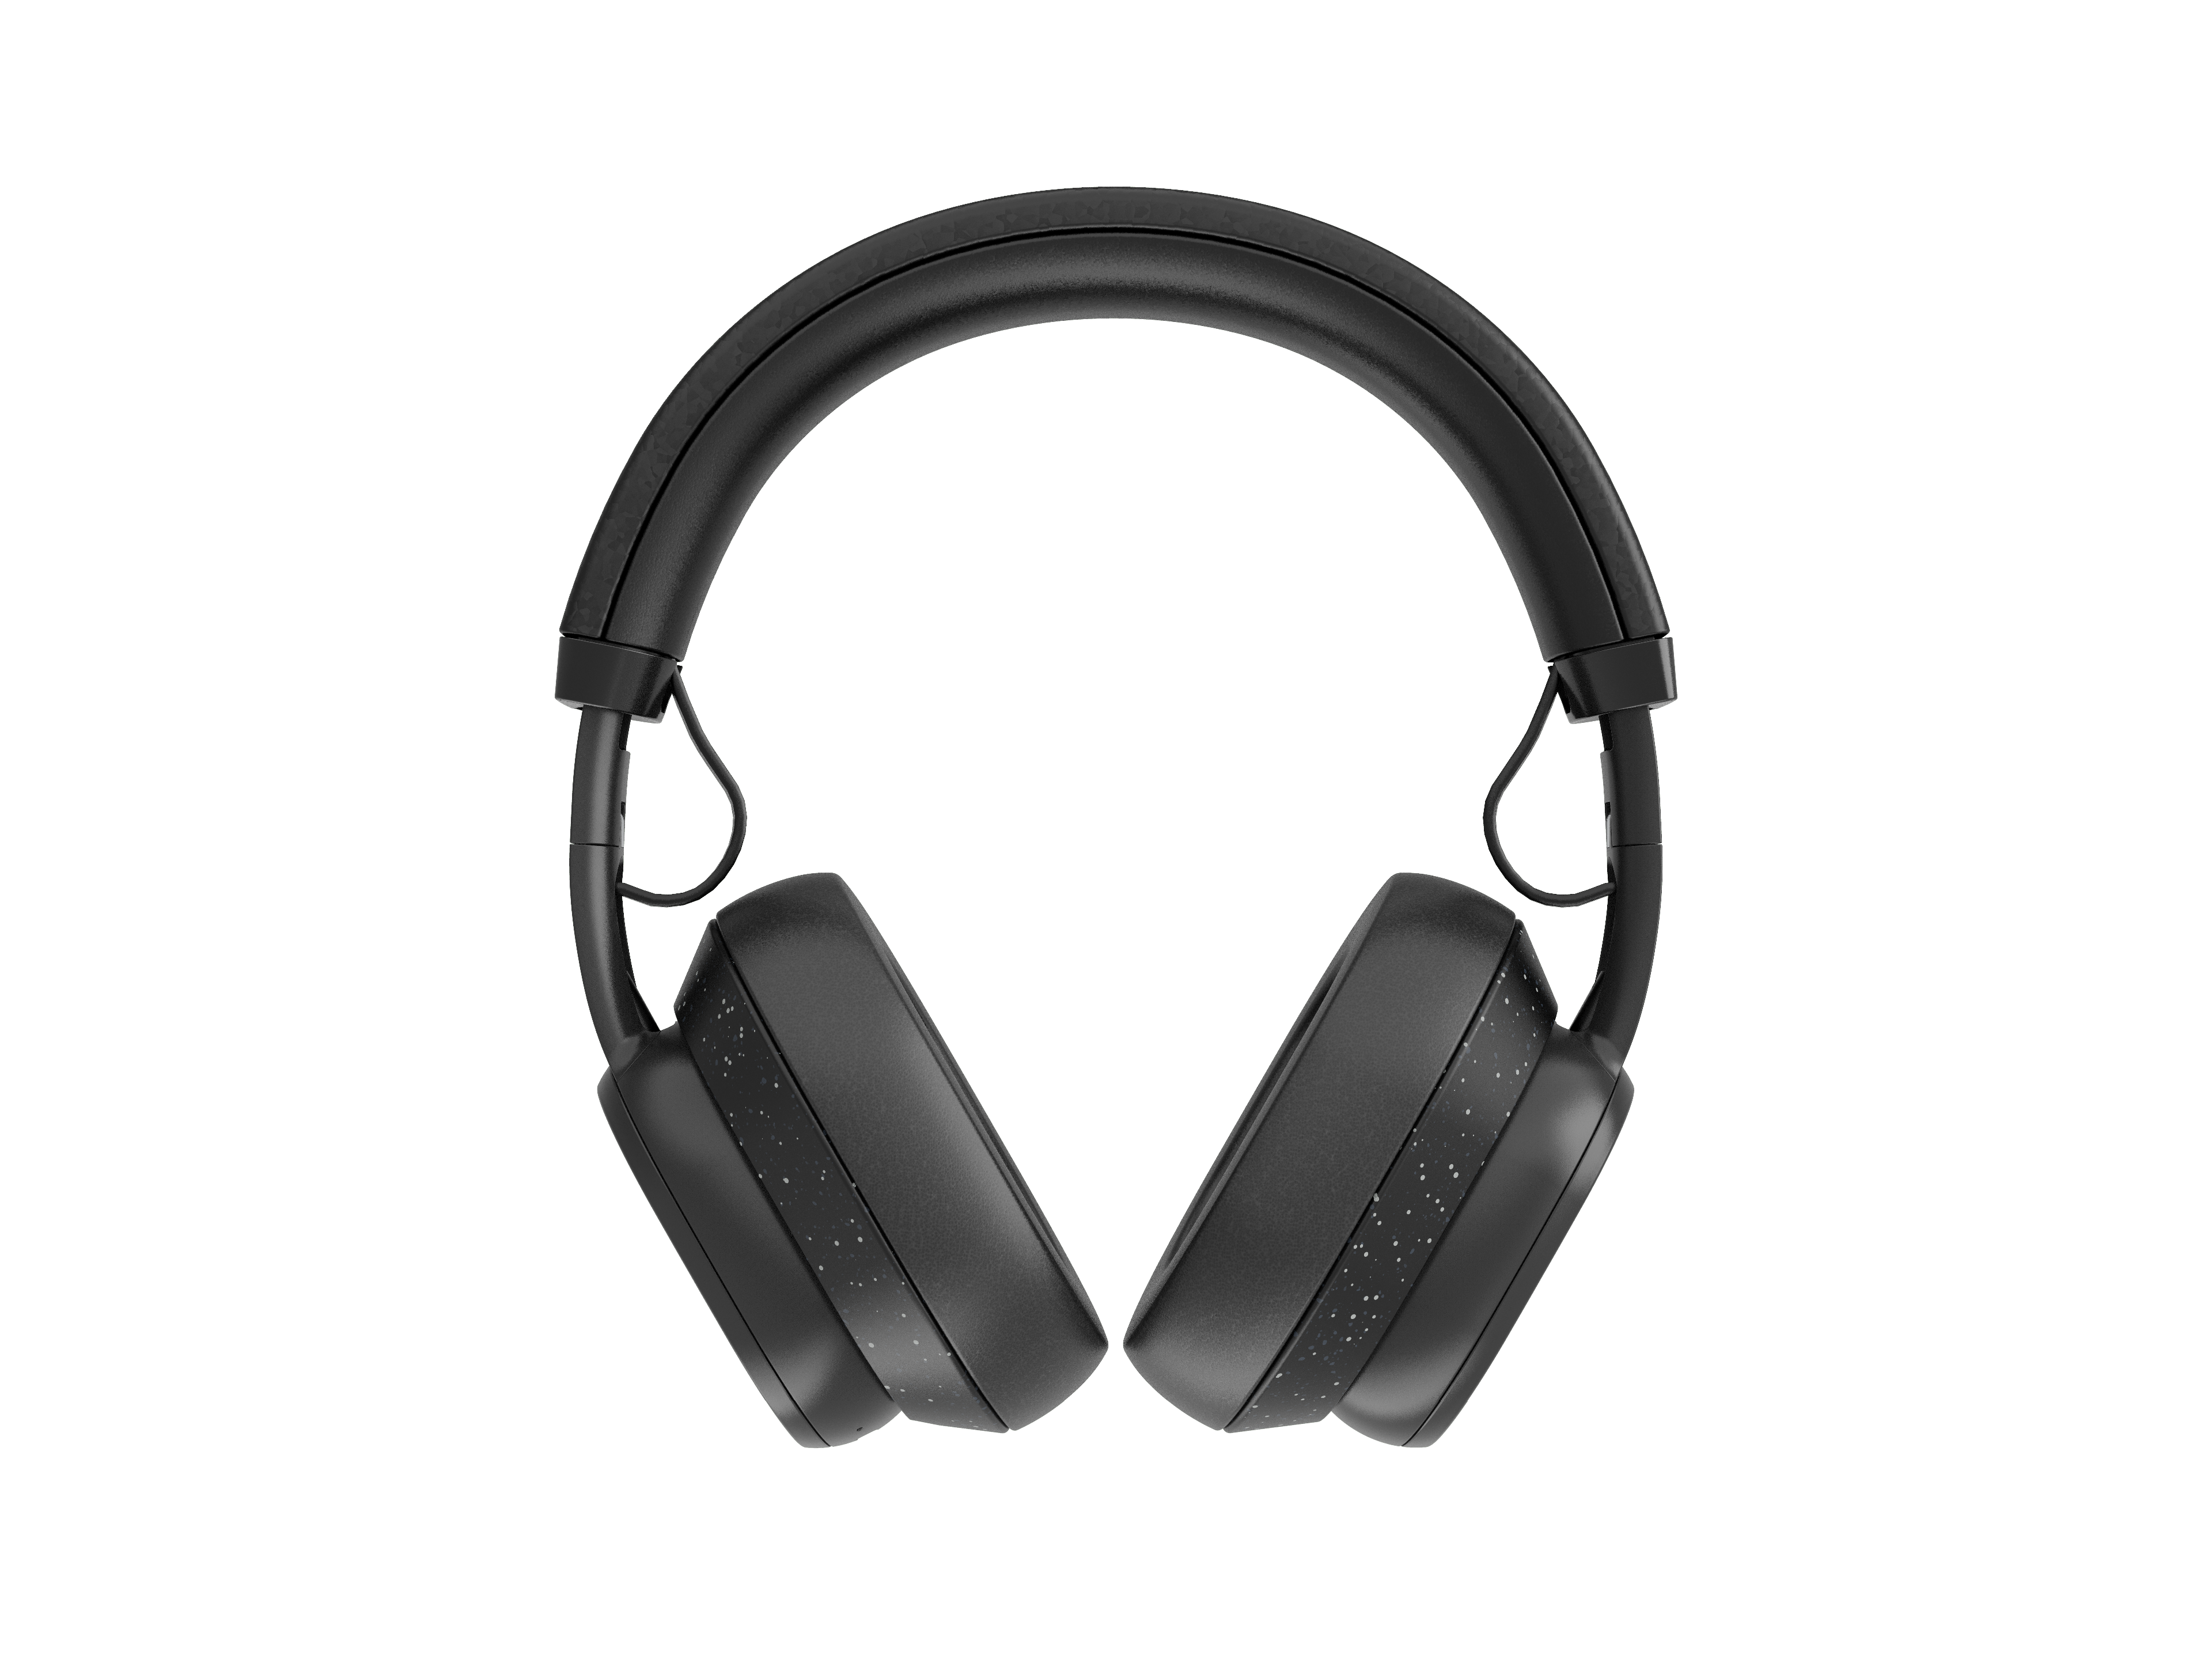 Kopfhörer Cyberport Over-Ear schwarz XL ++ Fairphone Fairbuds